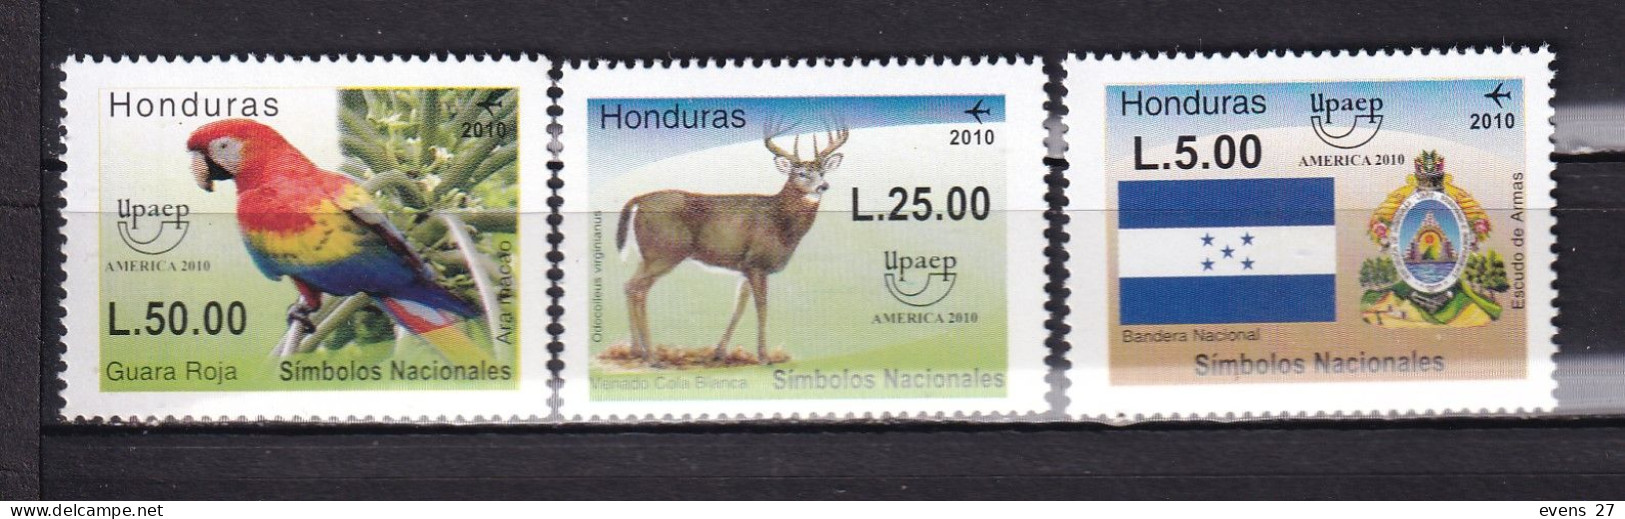 HONDURAS-2010-UPAEP-BIRD-DEER-FLAG-MNH - Honduras